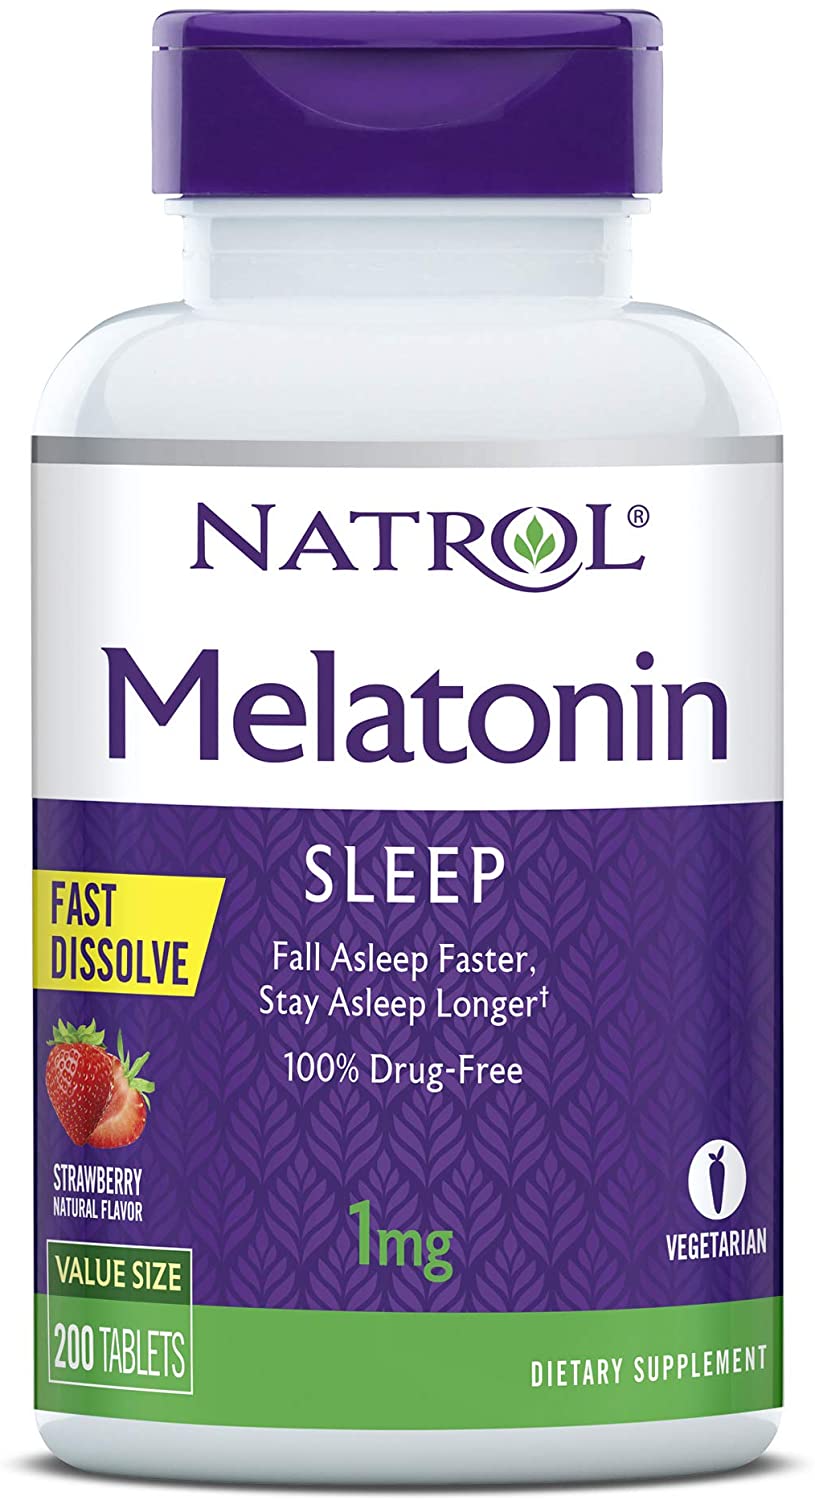 Natrol Melatonin Fast Dissolve Tablets, sleep aid